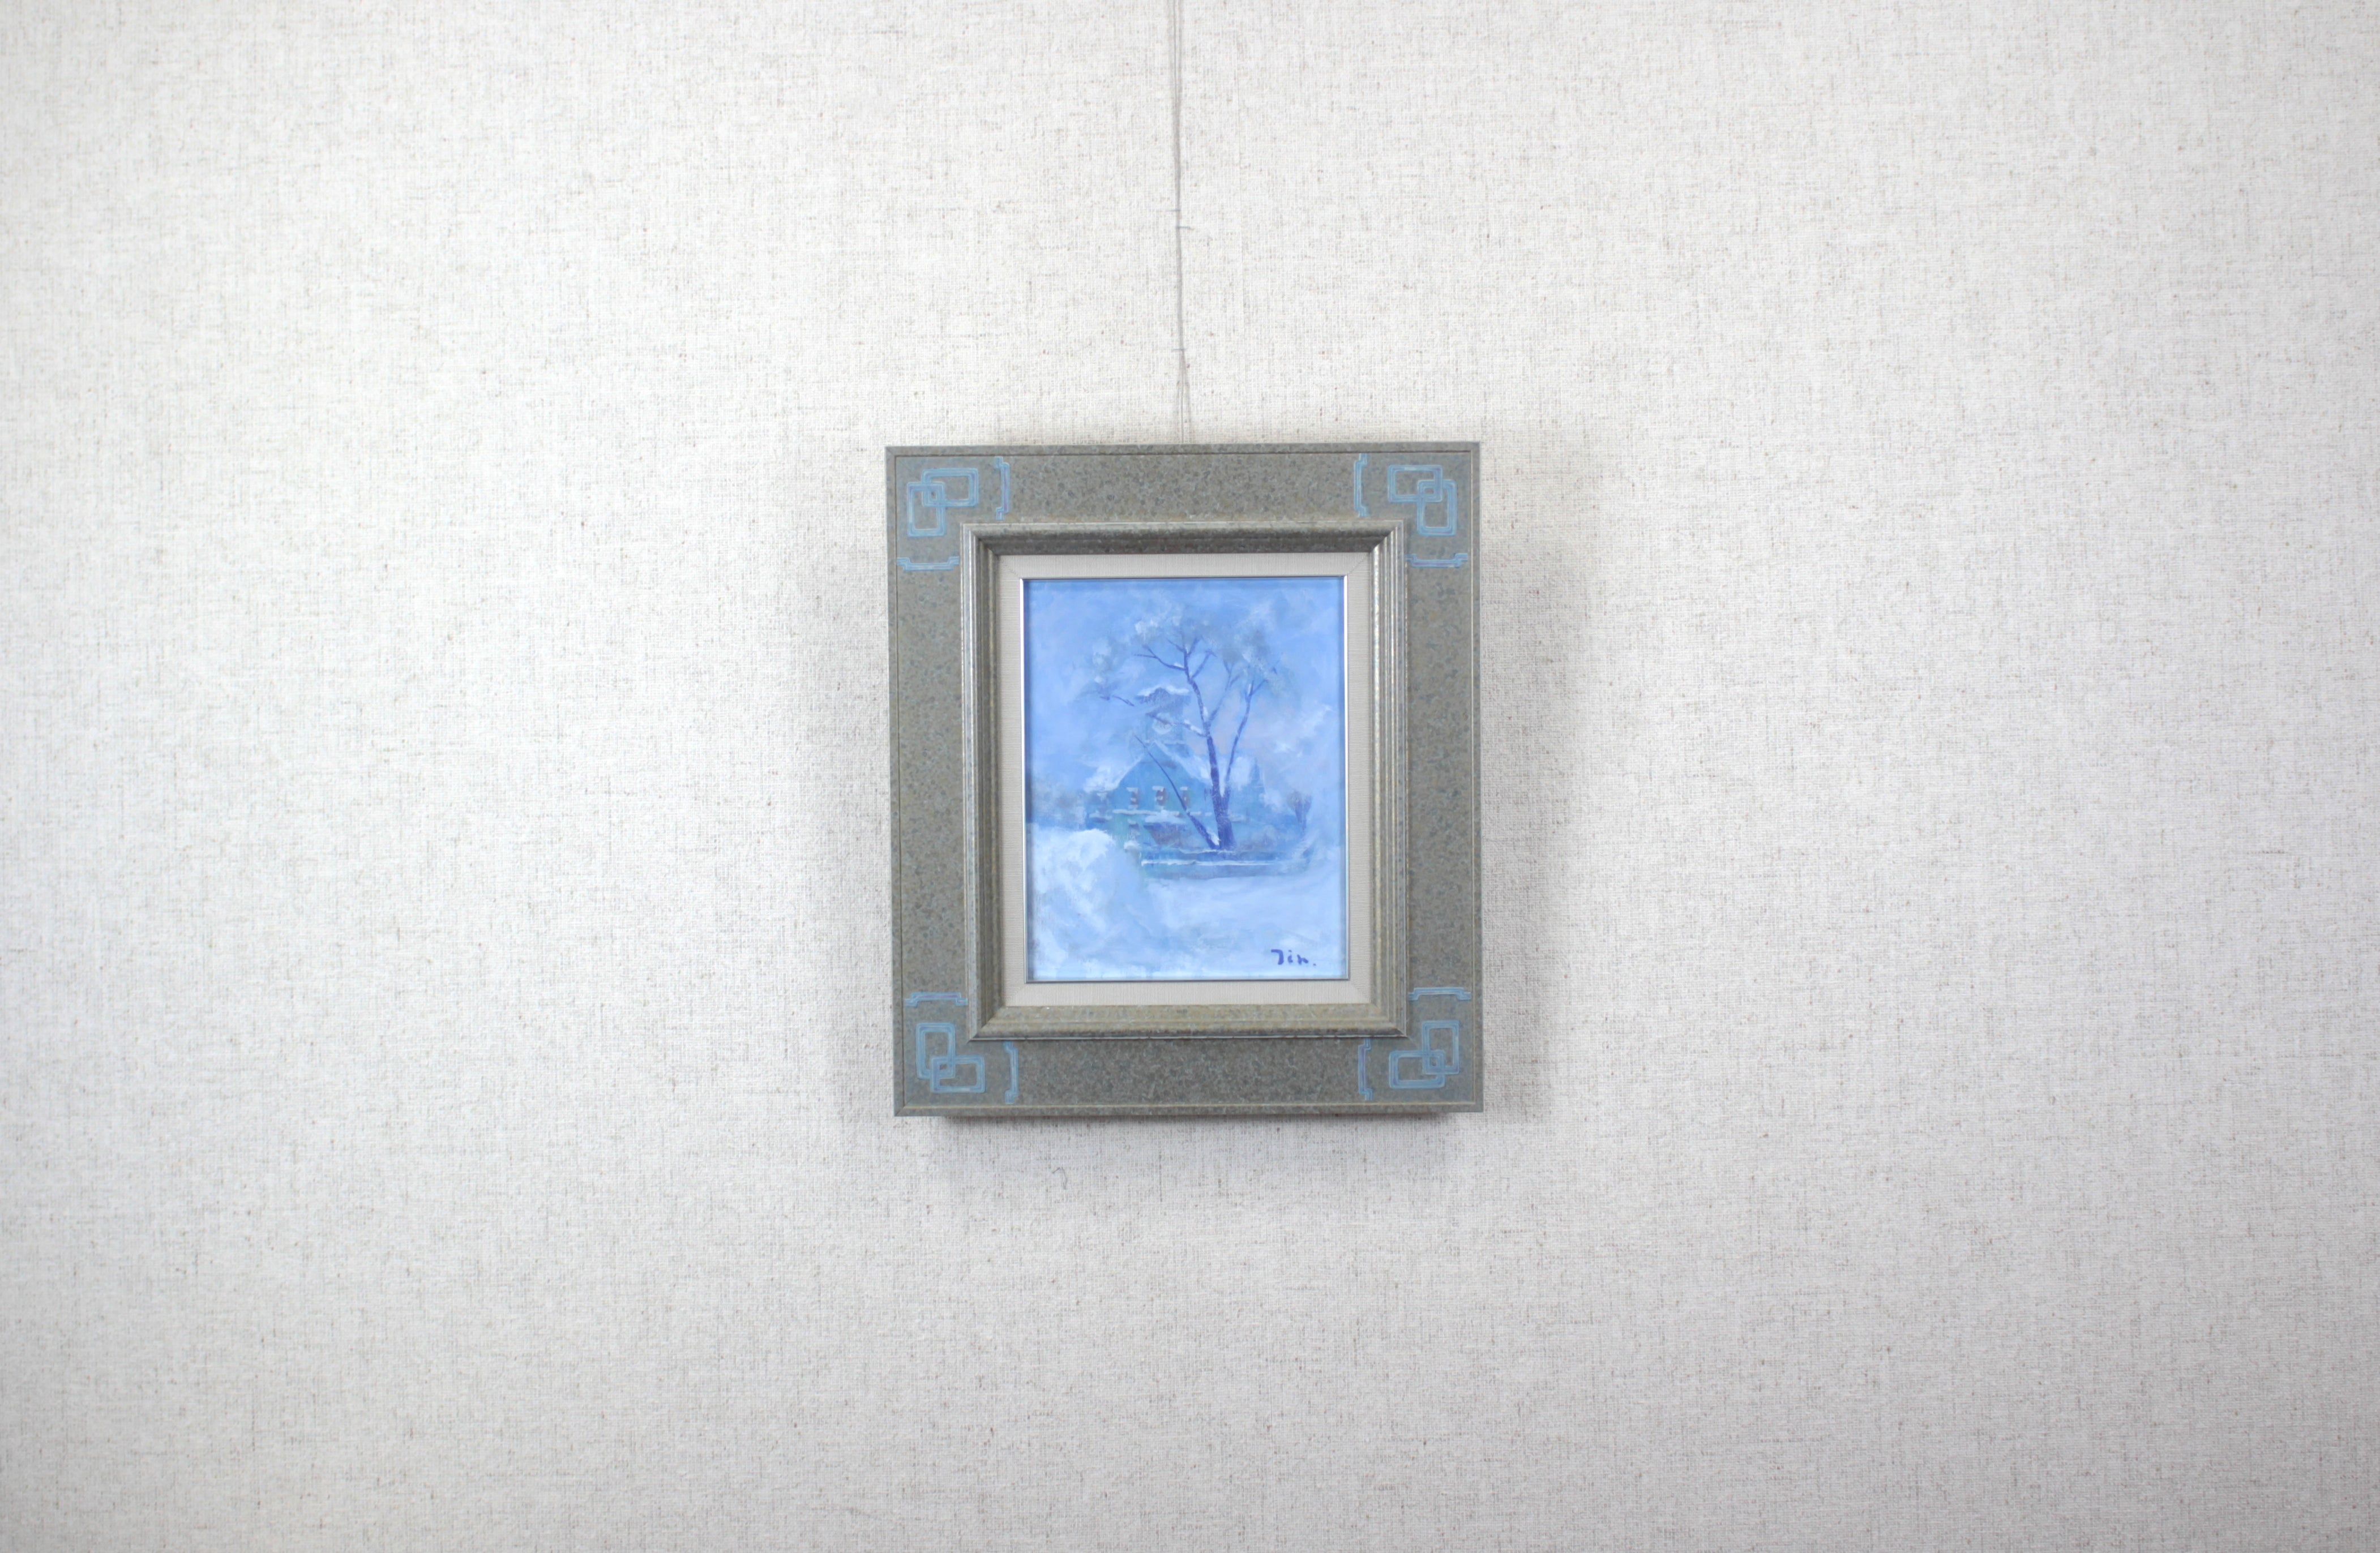 伊藤 仁『吹雪の時計台』 – 北海道画廊